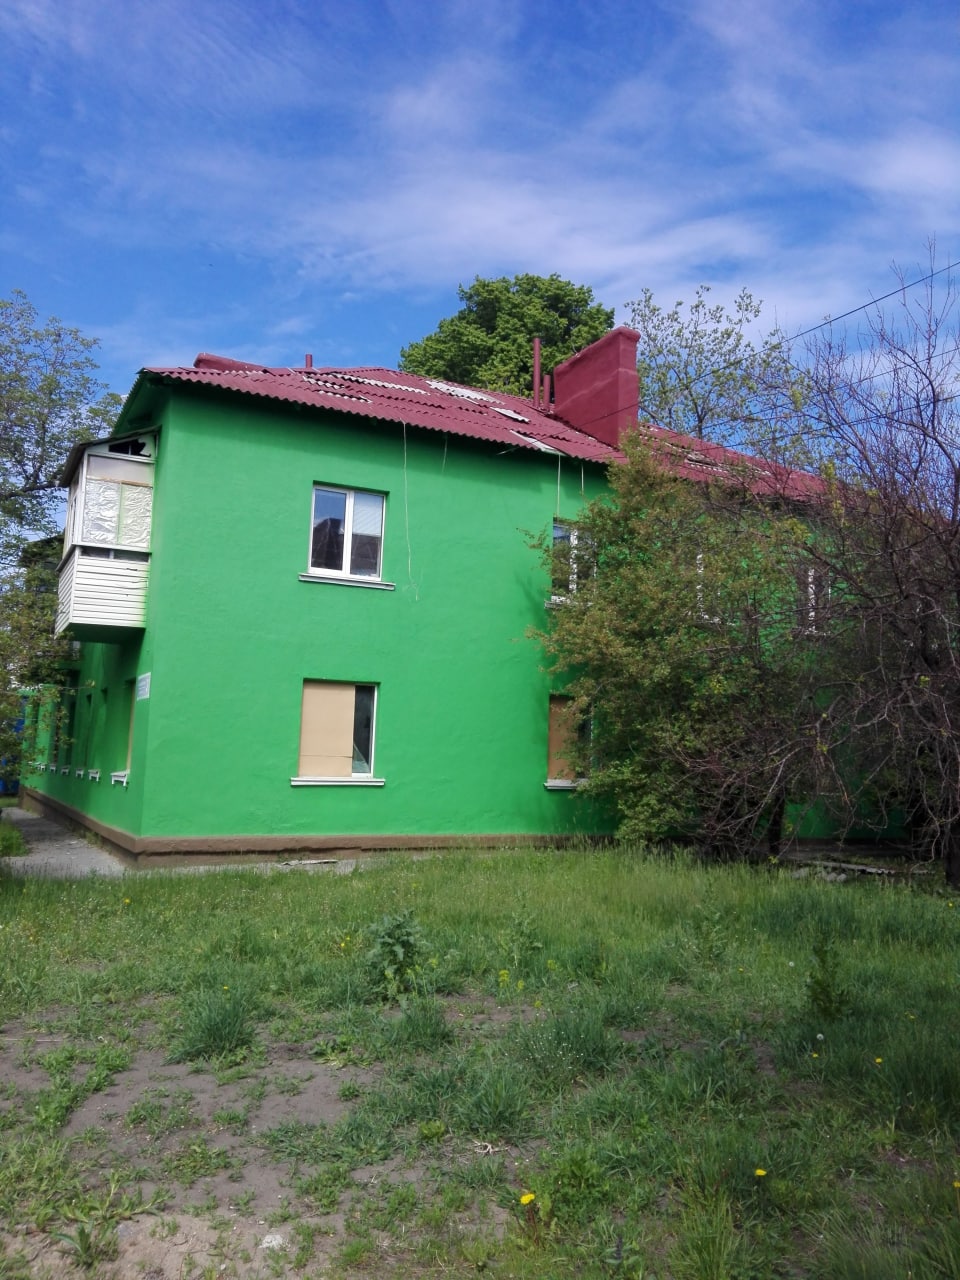 Разбитая крыша дома в Харькове до ремонта - фото мэрии